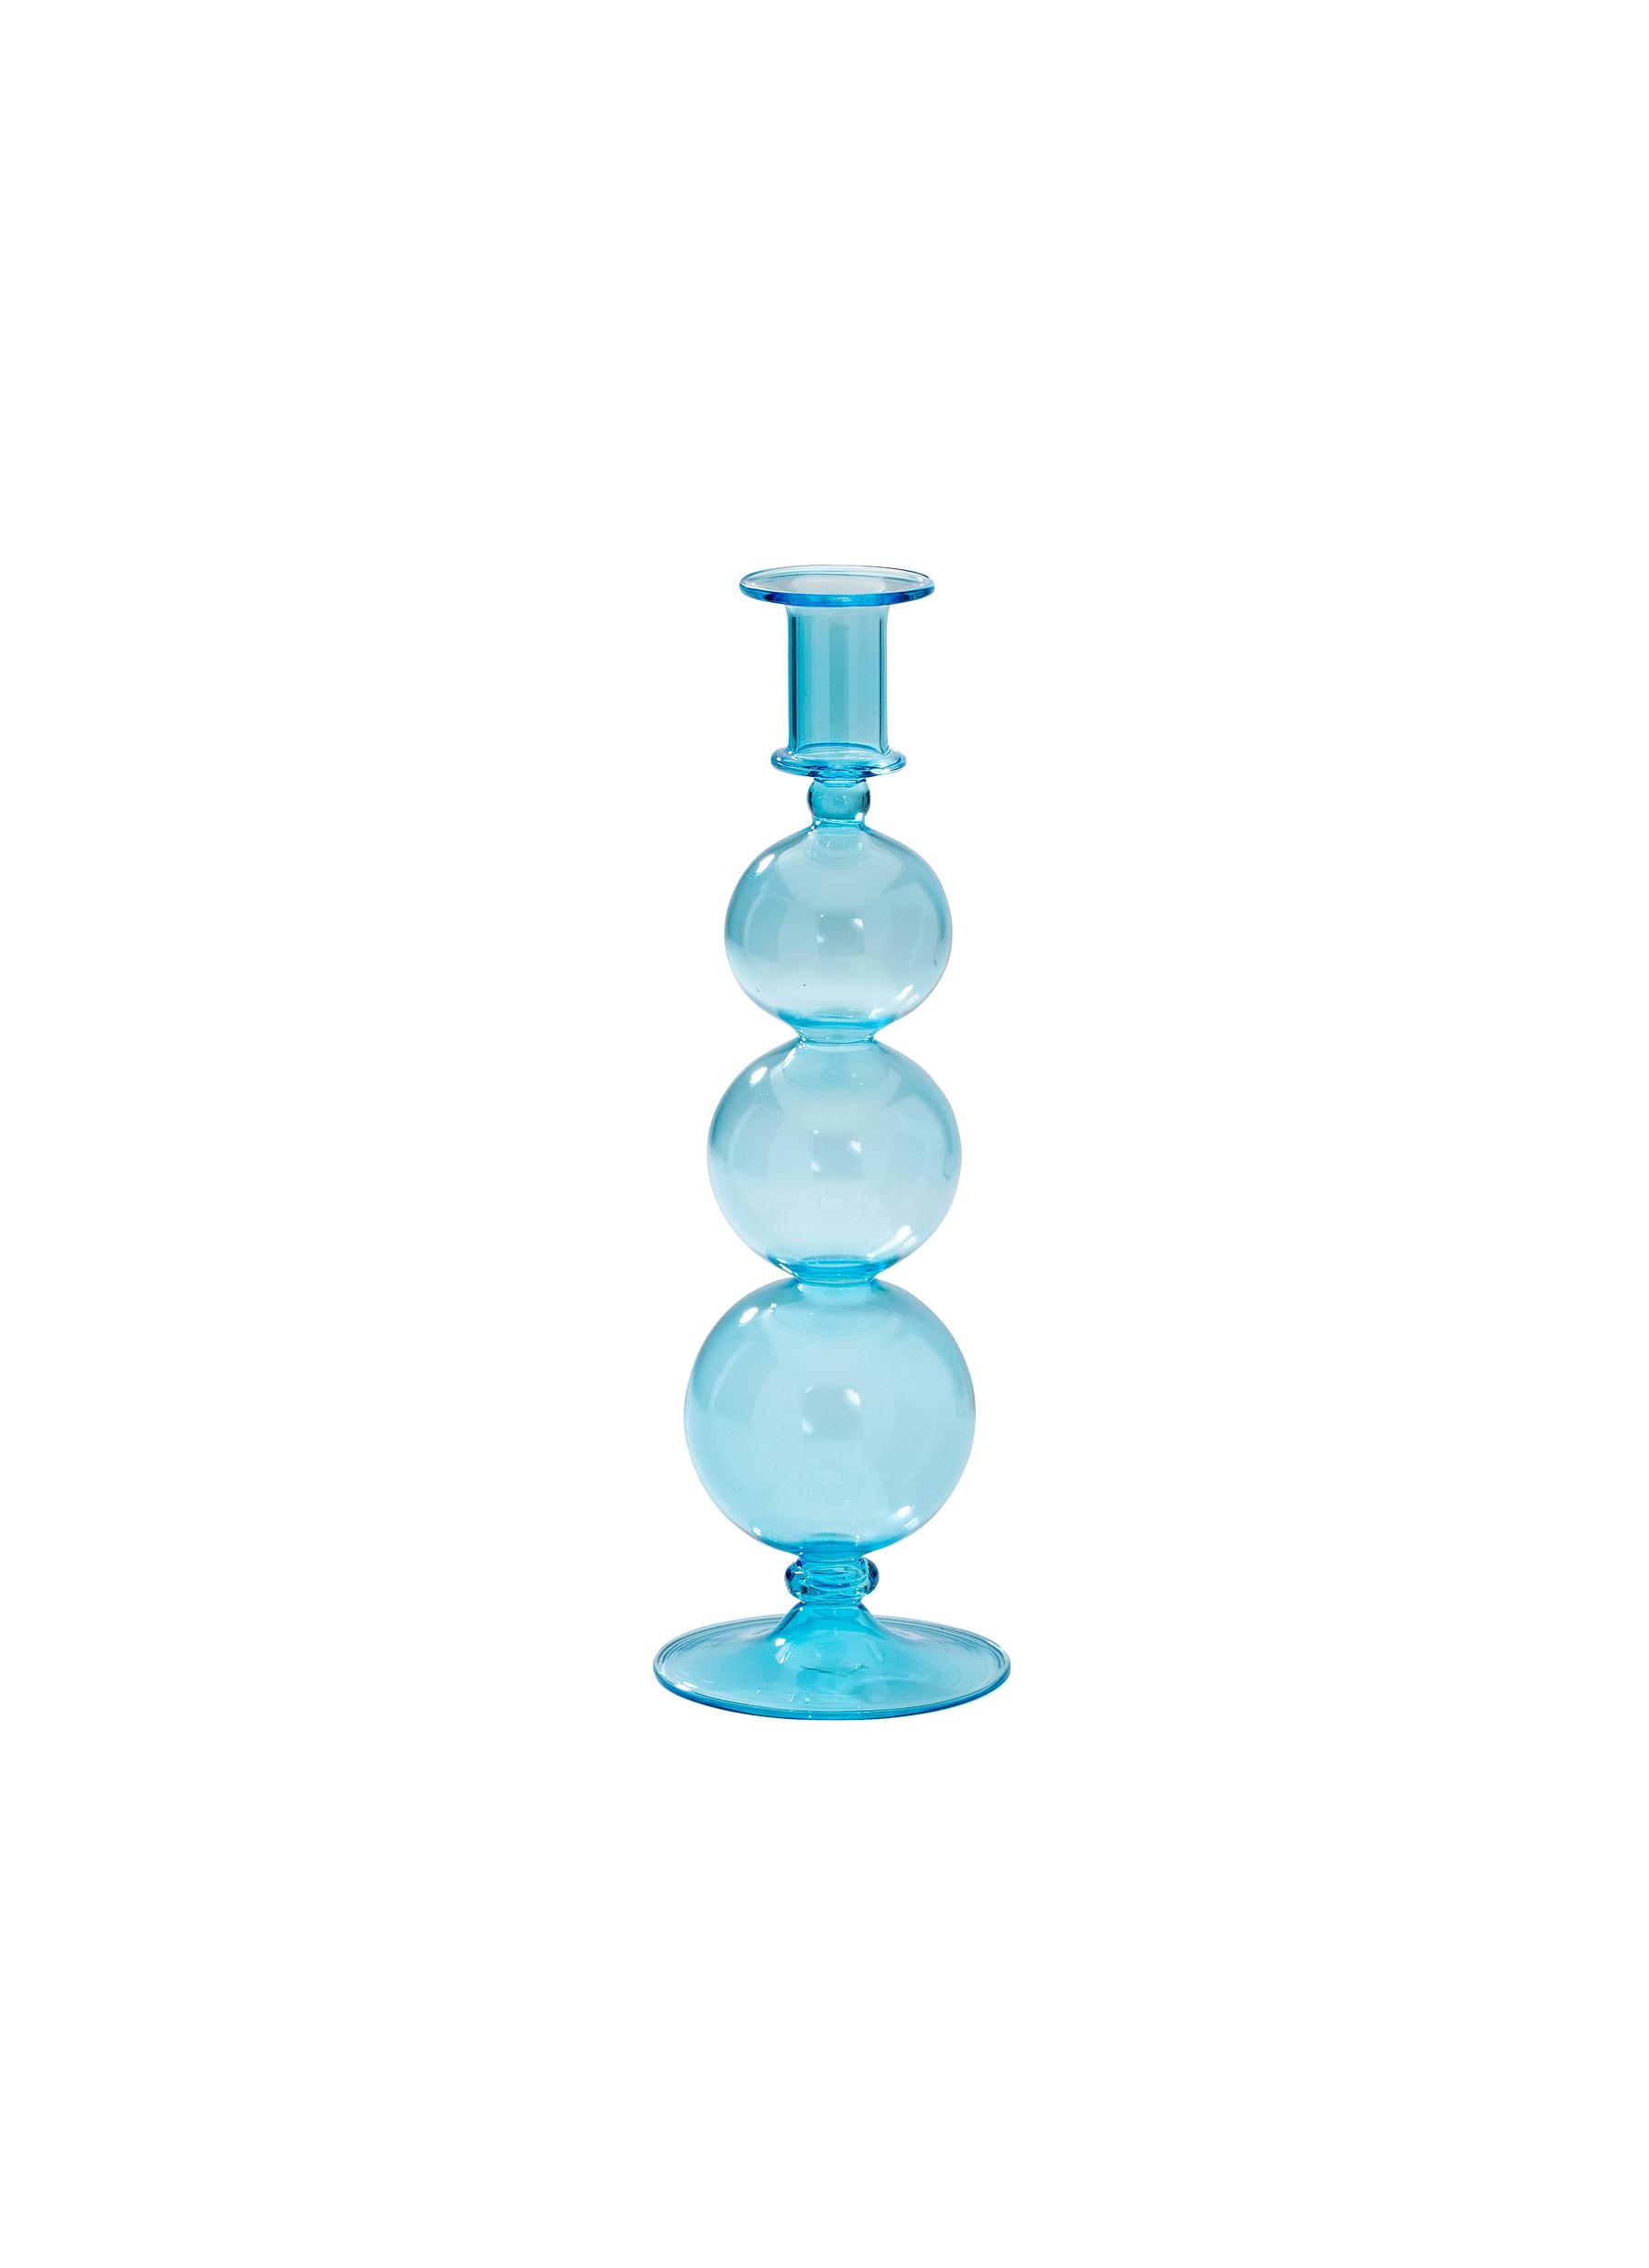 ANNA + NINA BUBBLE GLASS CANDLE HOLDER - AQUA BLUE